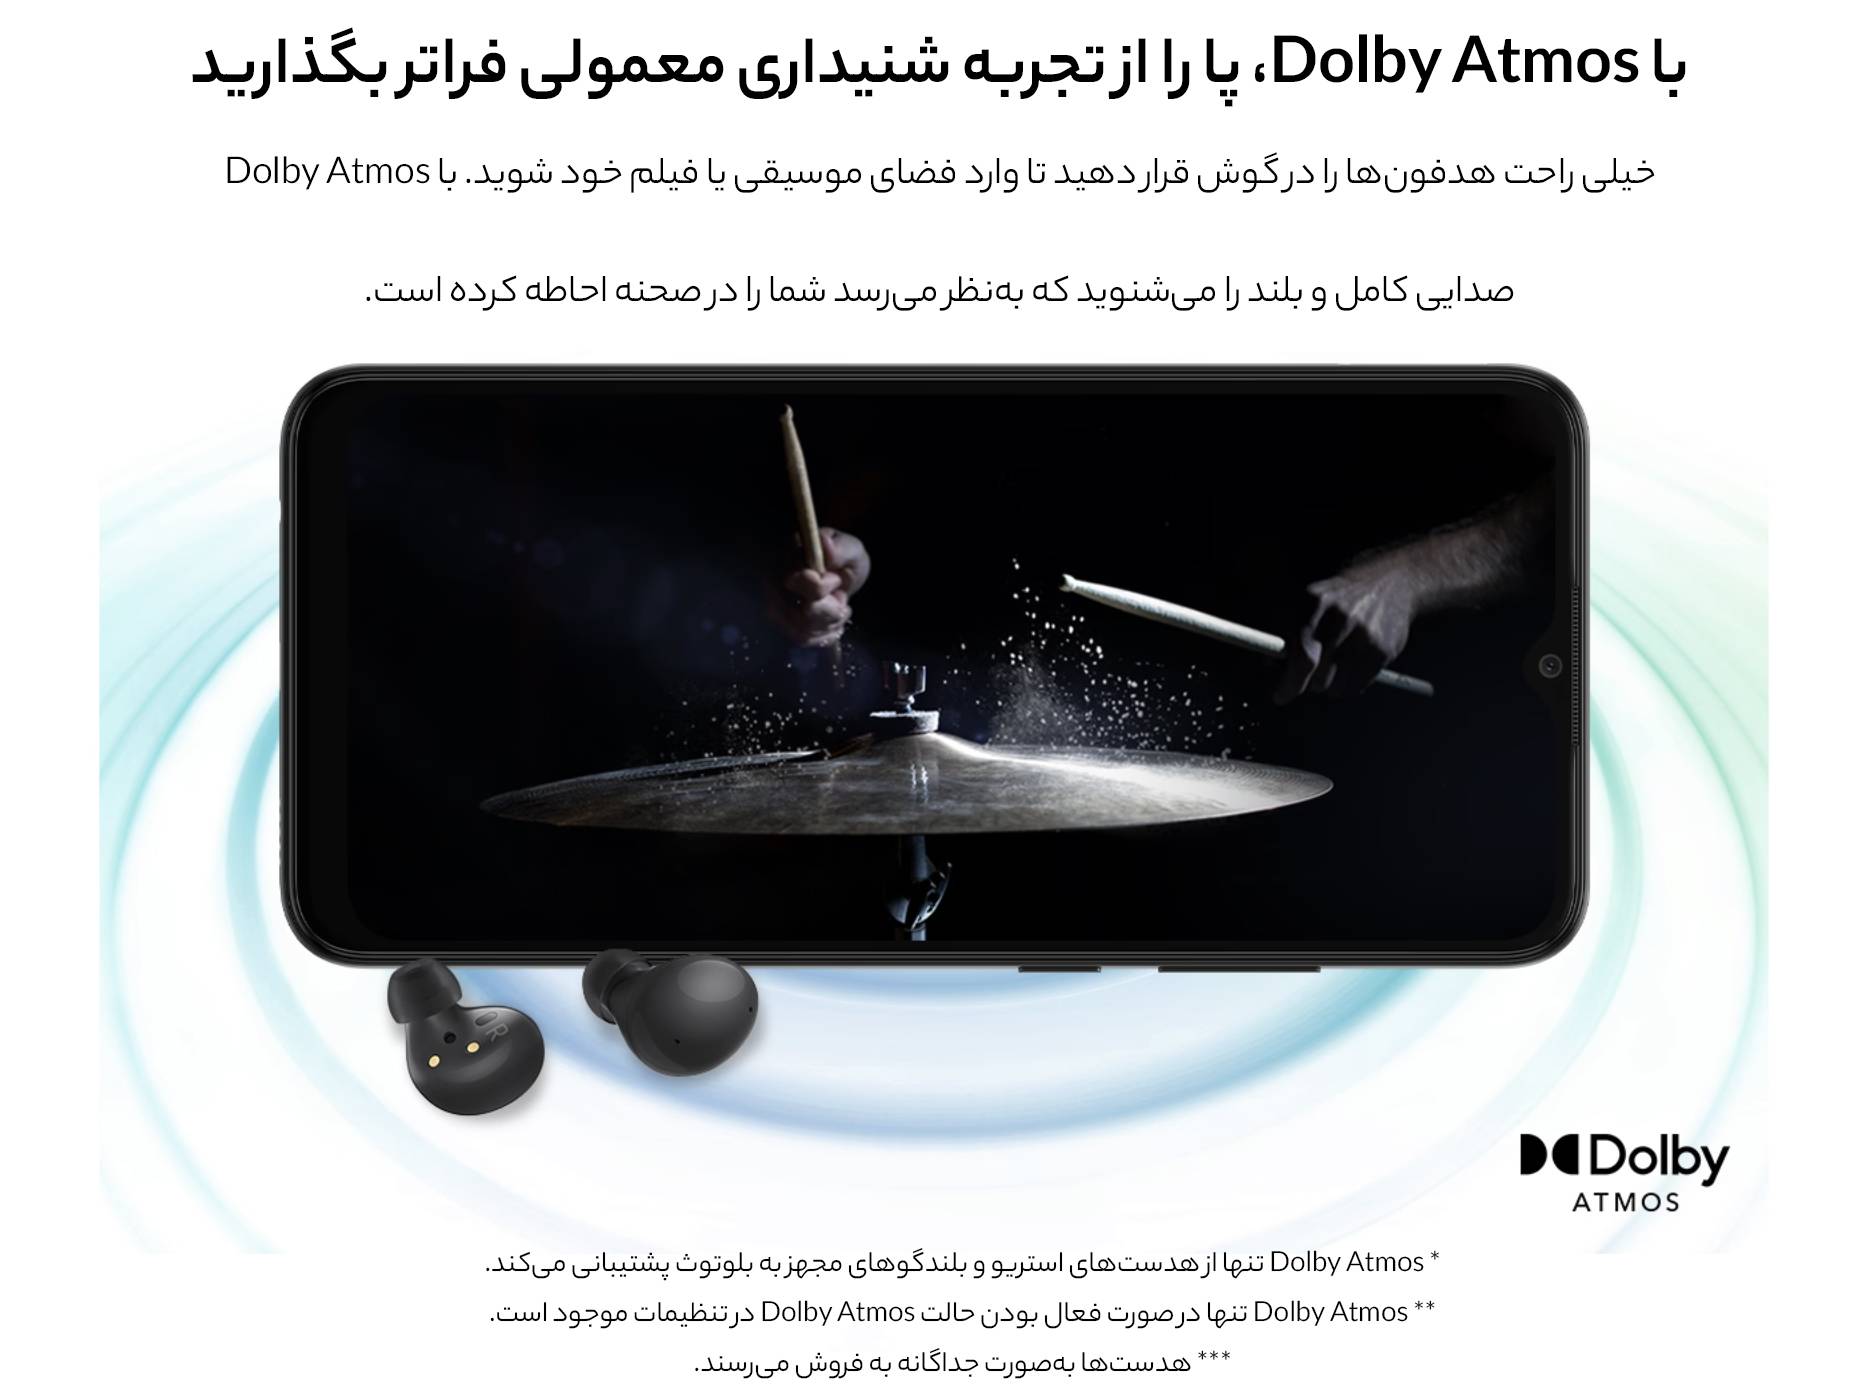 گوشی موبايل سامسونگ مدل Galaxy A03 Core ظرفیت 32 گیگابایت - رم 2 گیگابایت